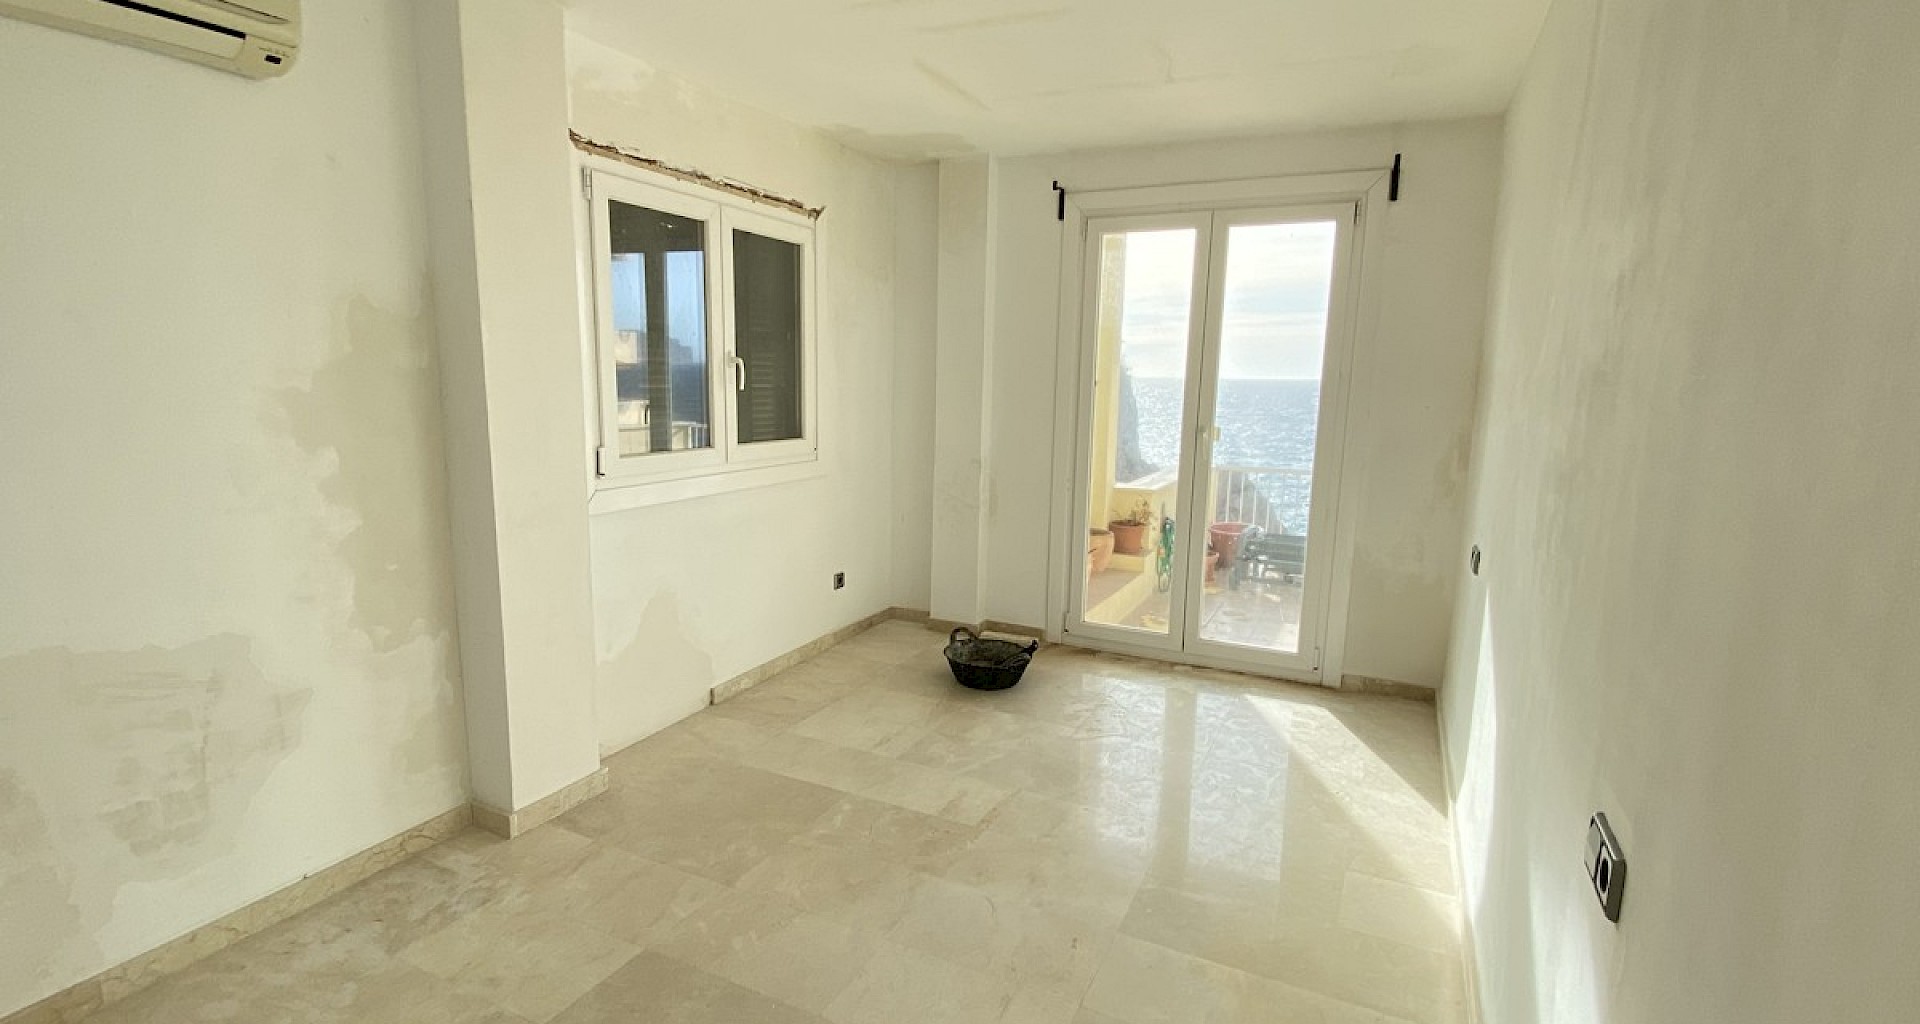 KROHN & LUEDEMANN Apartamento en primera línea de mar en Santa Ponsa para comprar y terminar la obra 